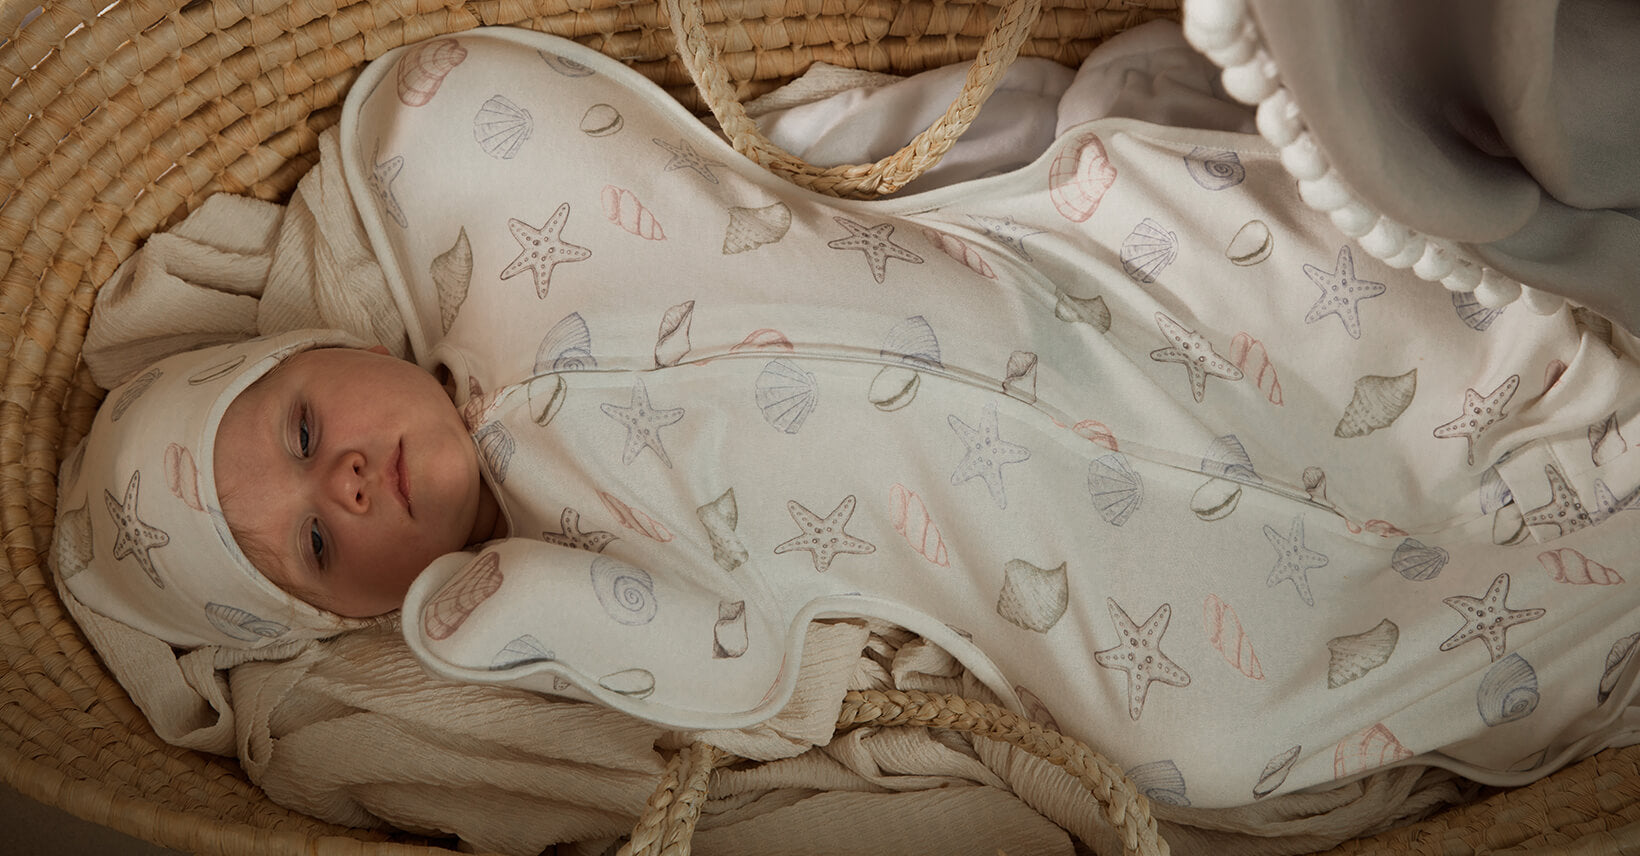 How many sleep sacks for the newborn?